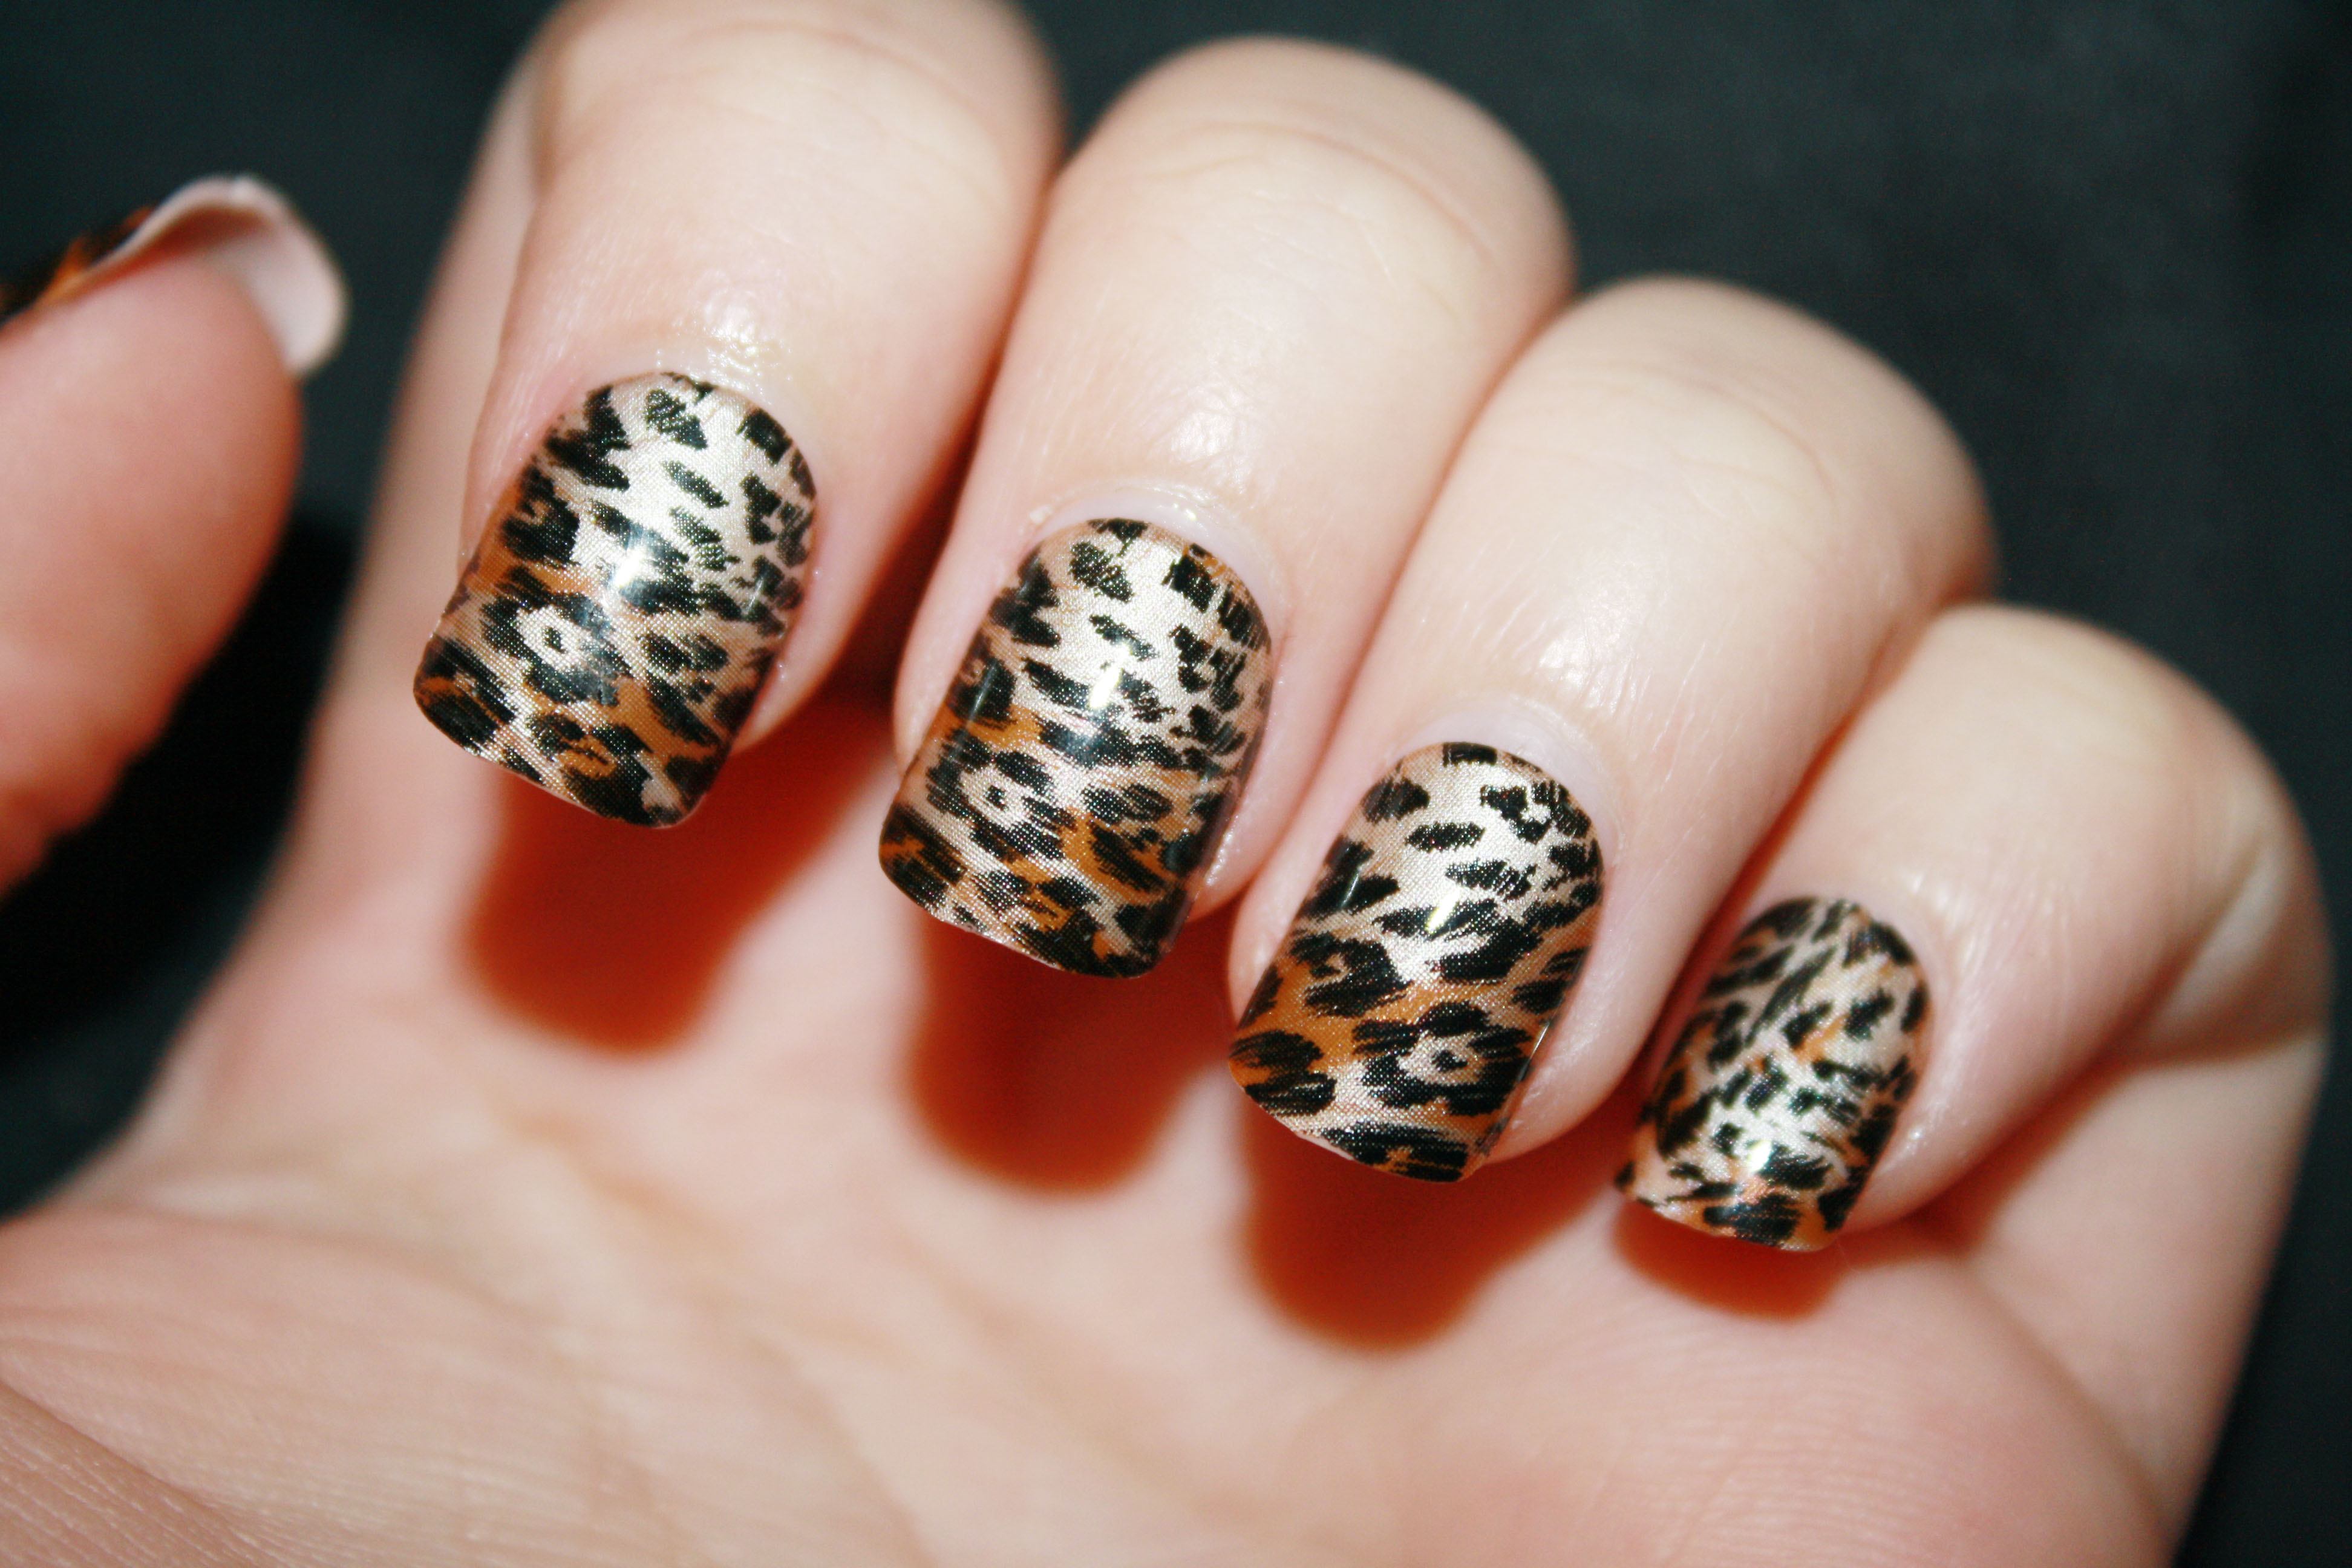 2. How to Create a Cheetah Print Gel Nail Design - wide 11